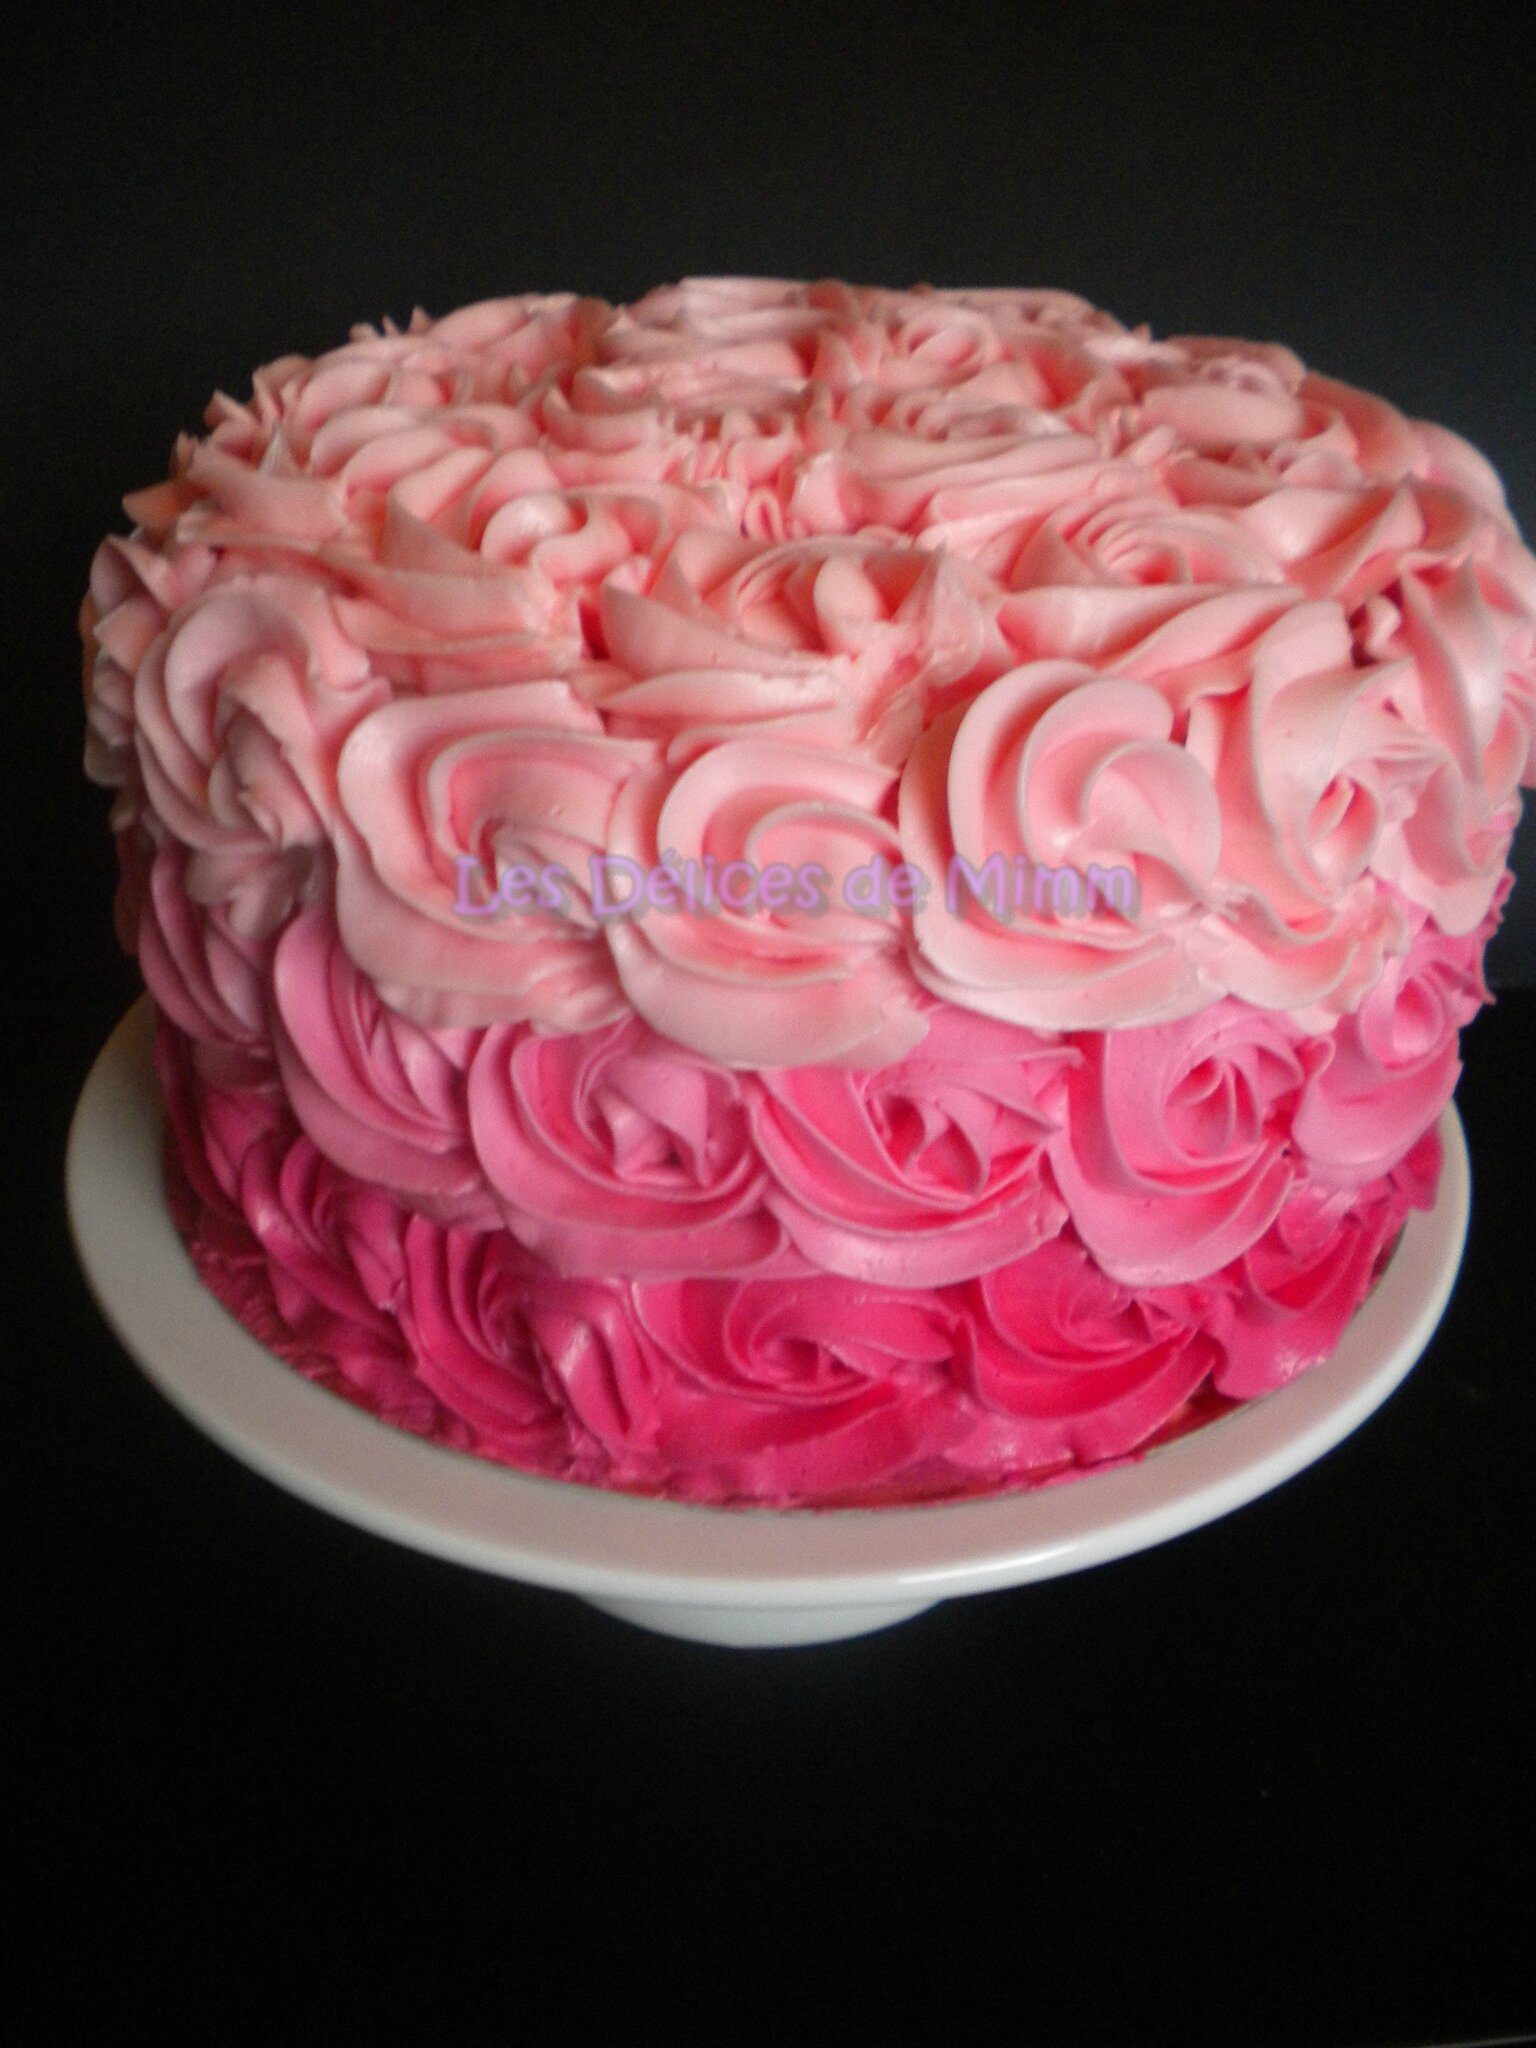 Un Rose Cake Pour Marion Les Delices De Mimm